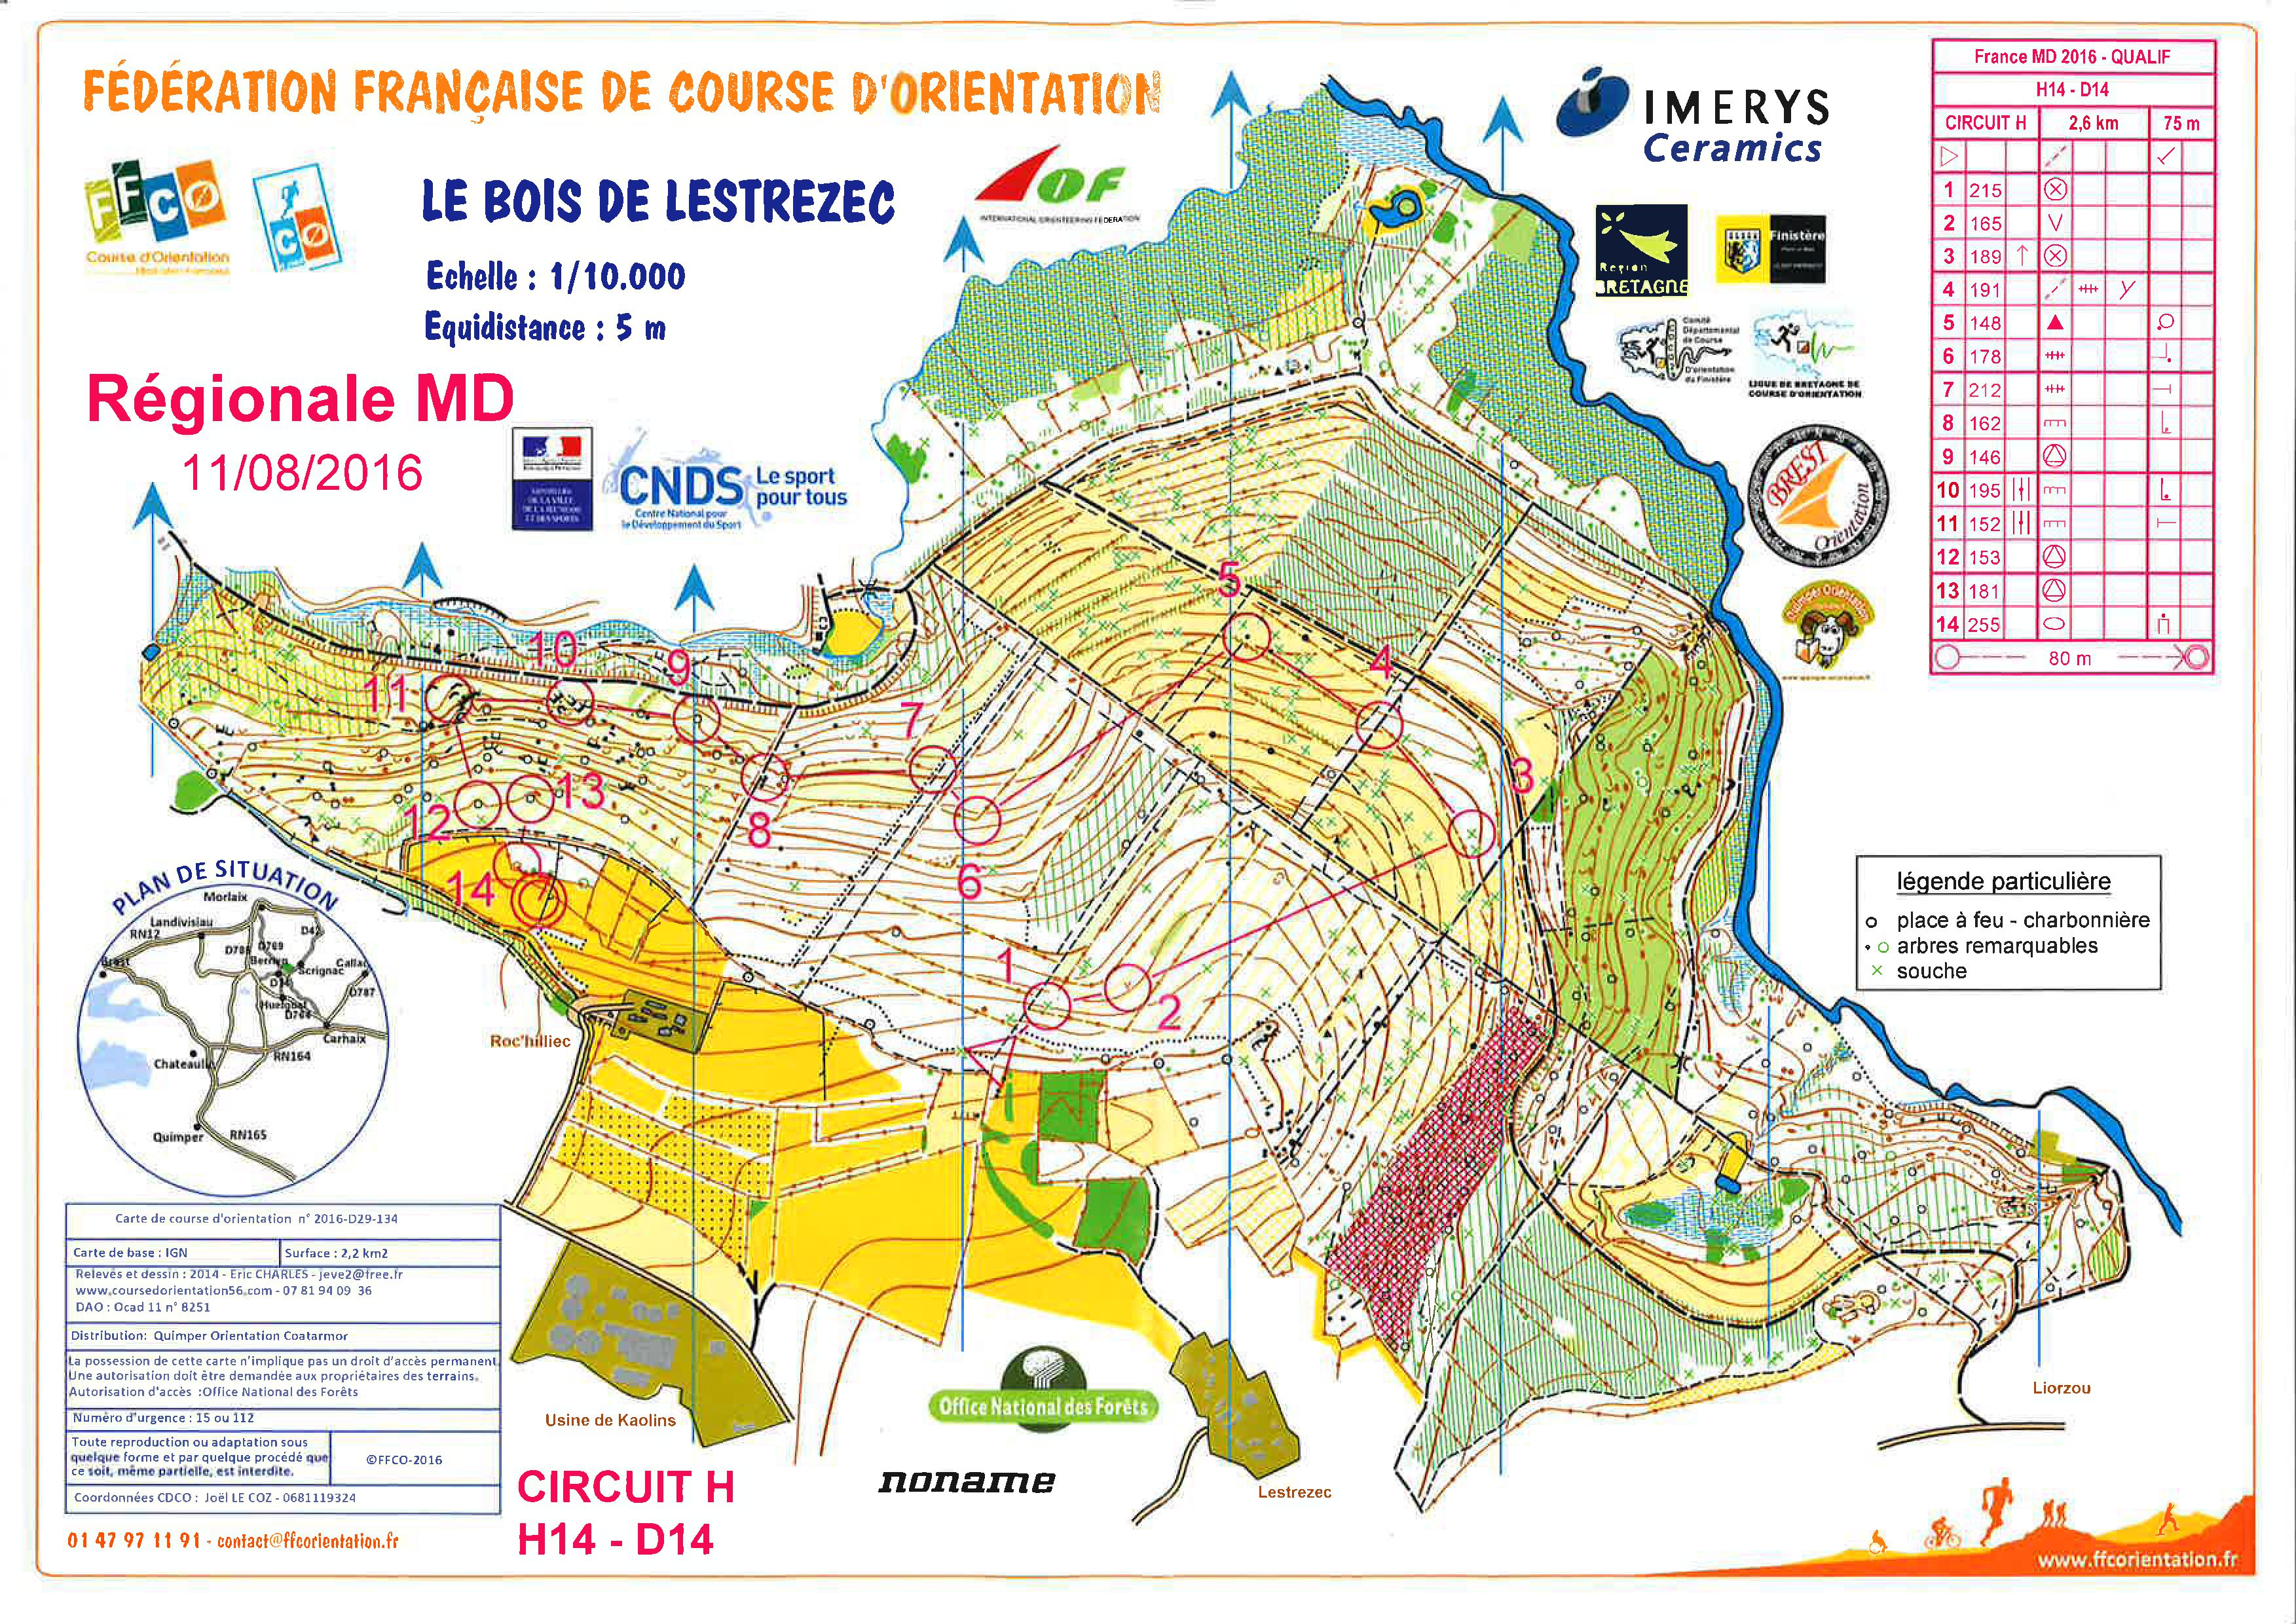 Qualification Championnat de France de Moyenne Distance (11-08-2016)